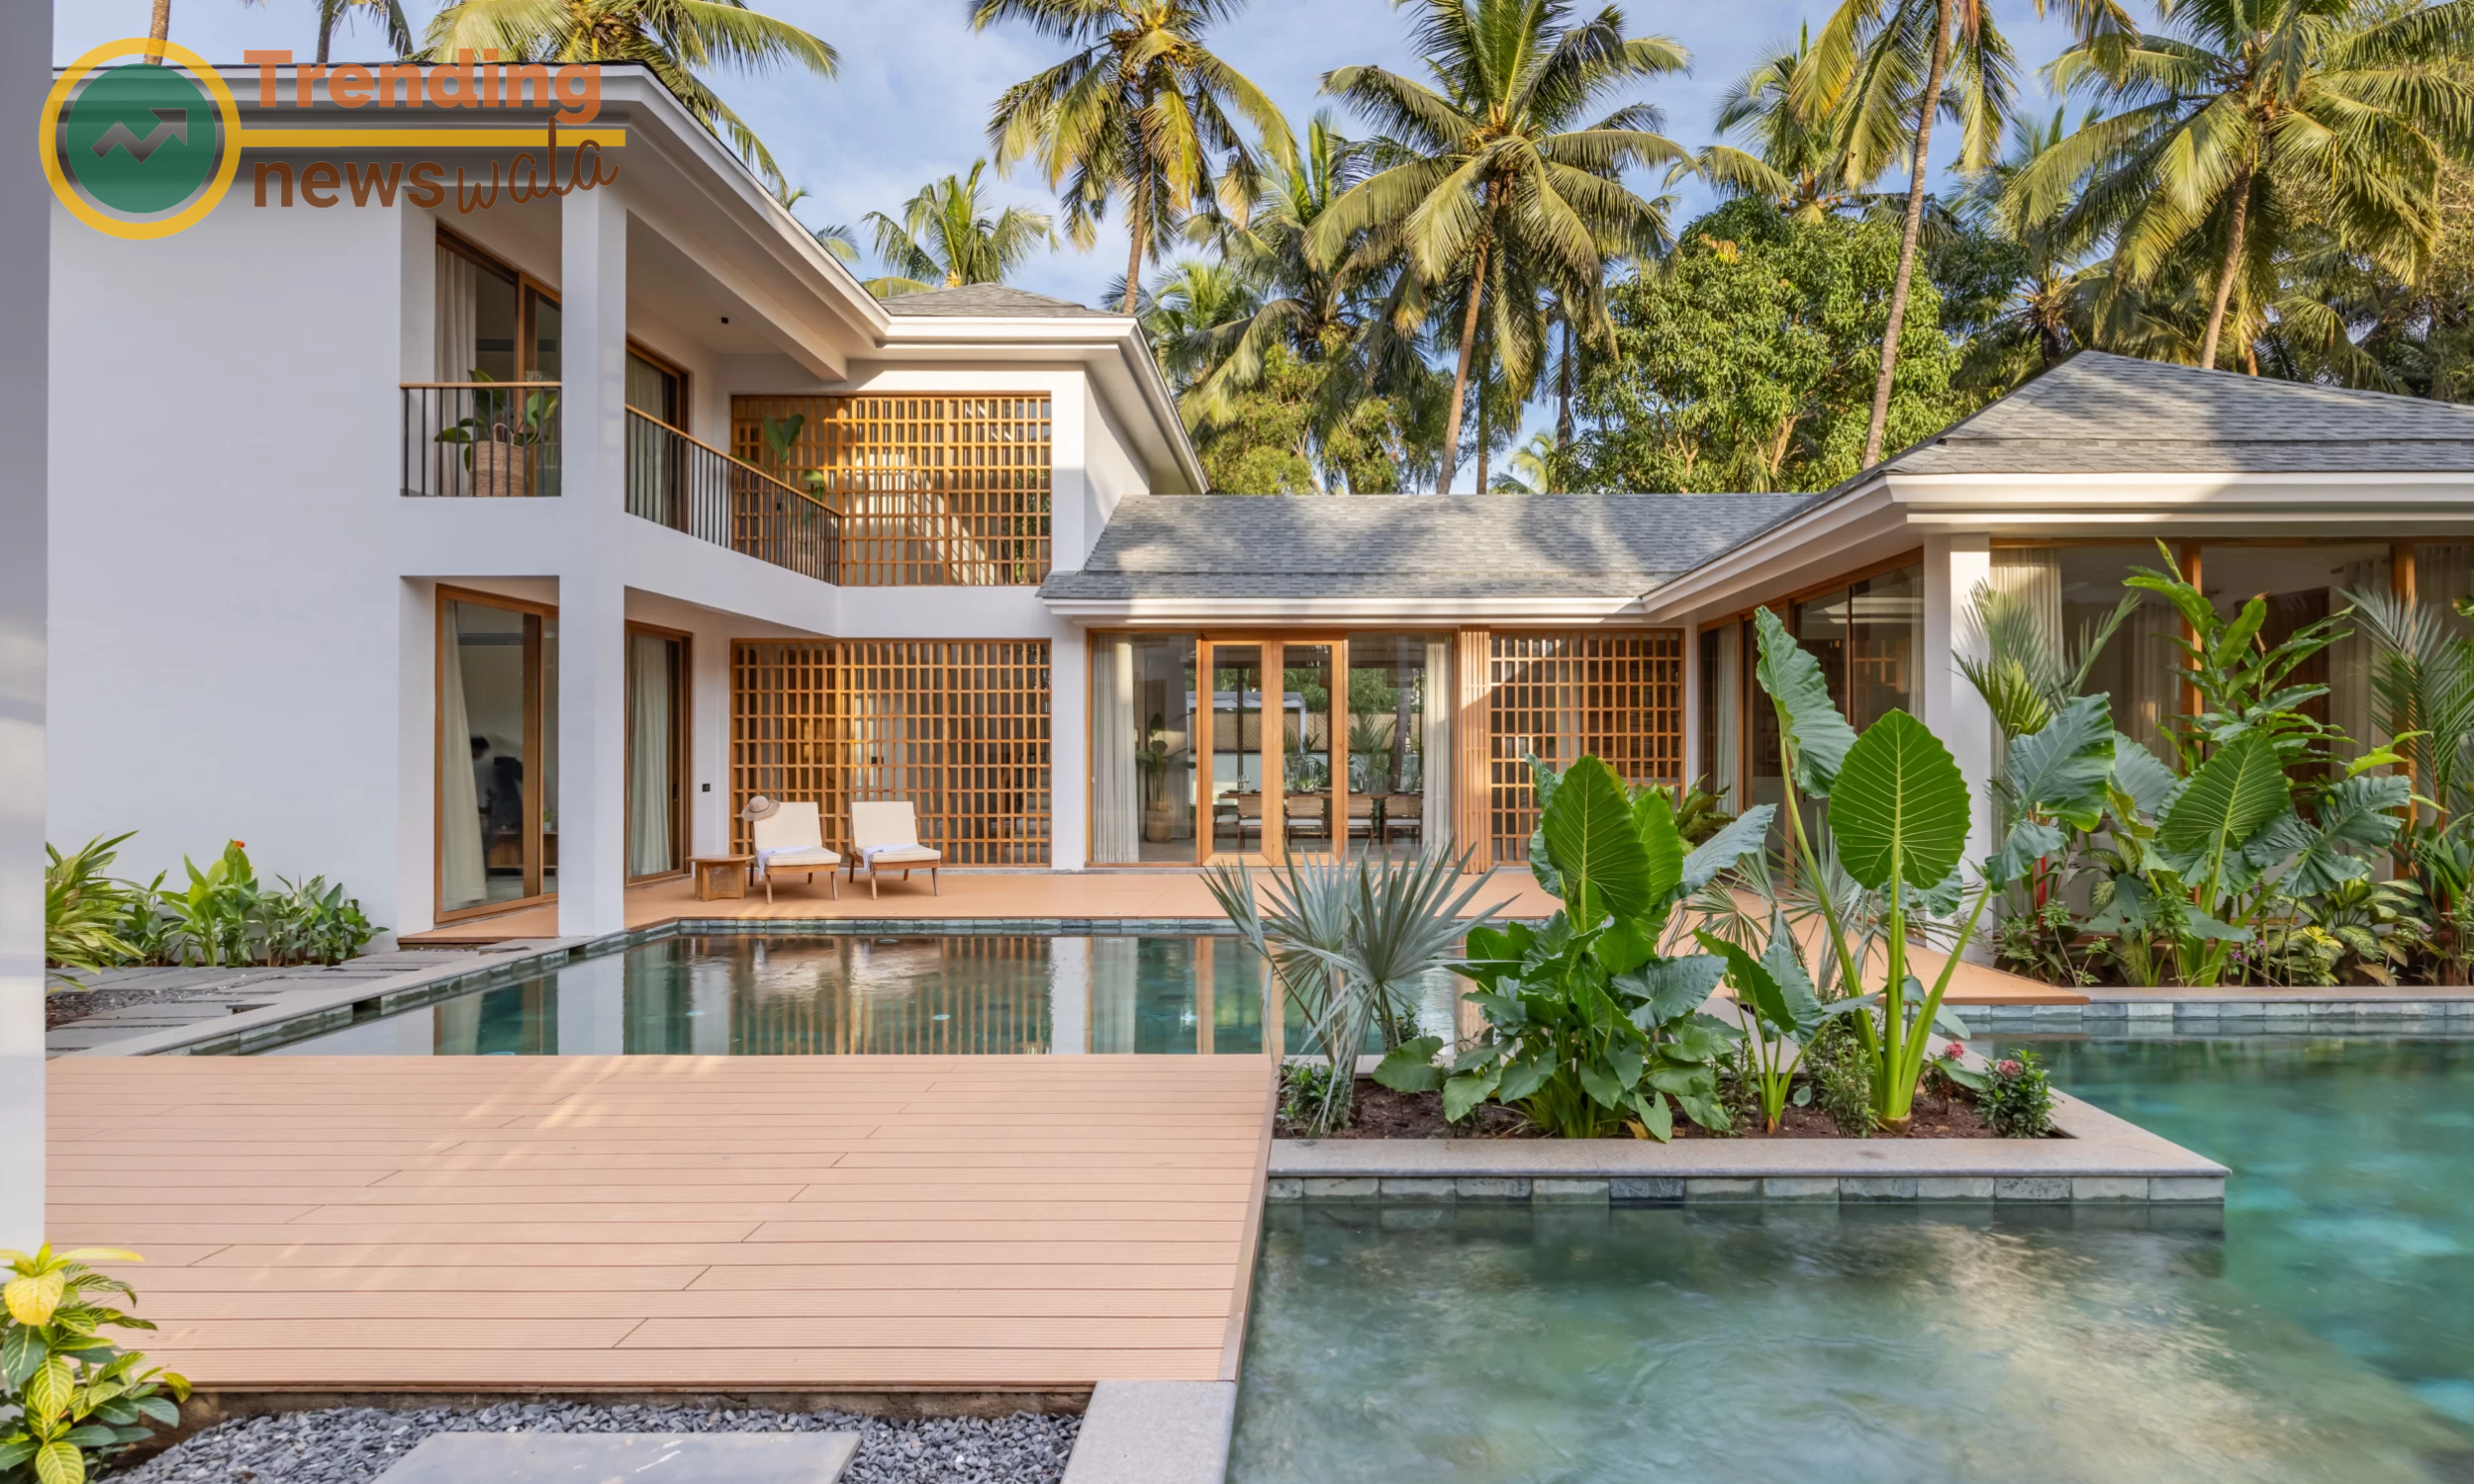 Some luxury villas in Goa provide exclusive access to pristine beaches